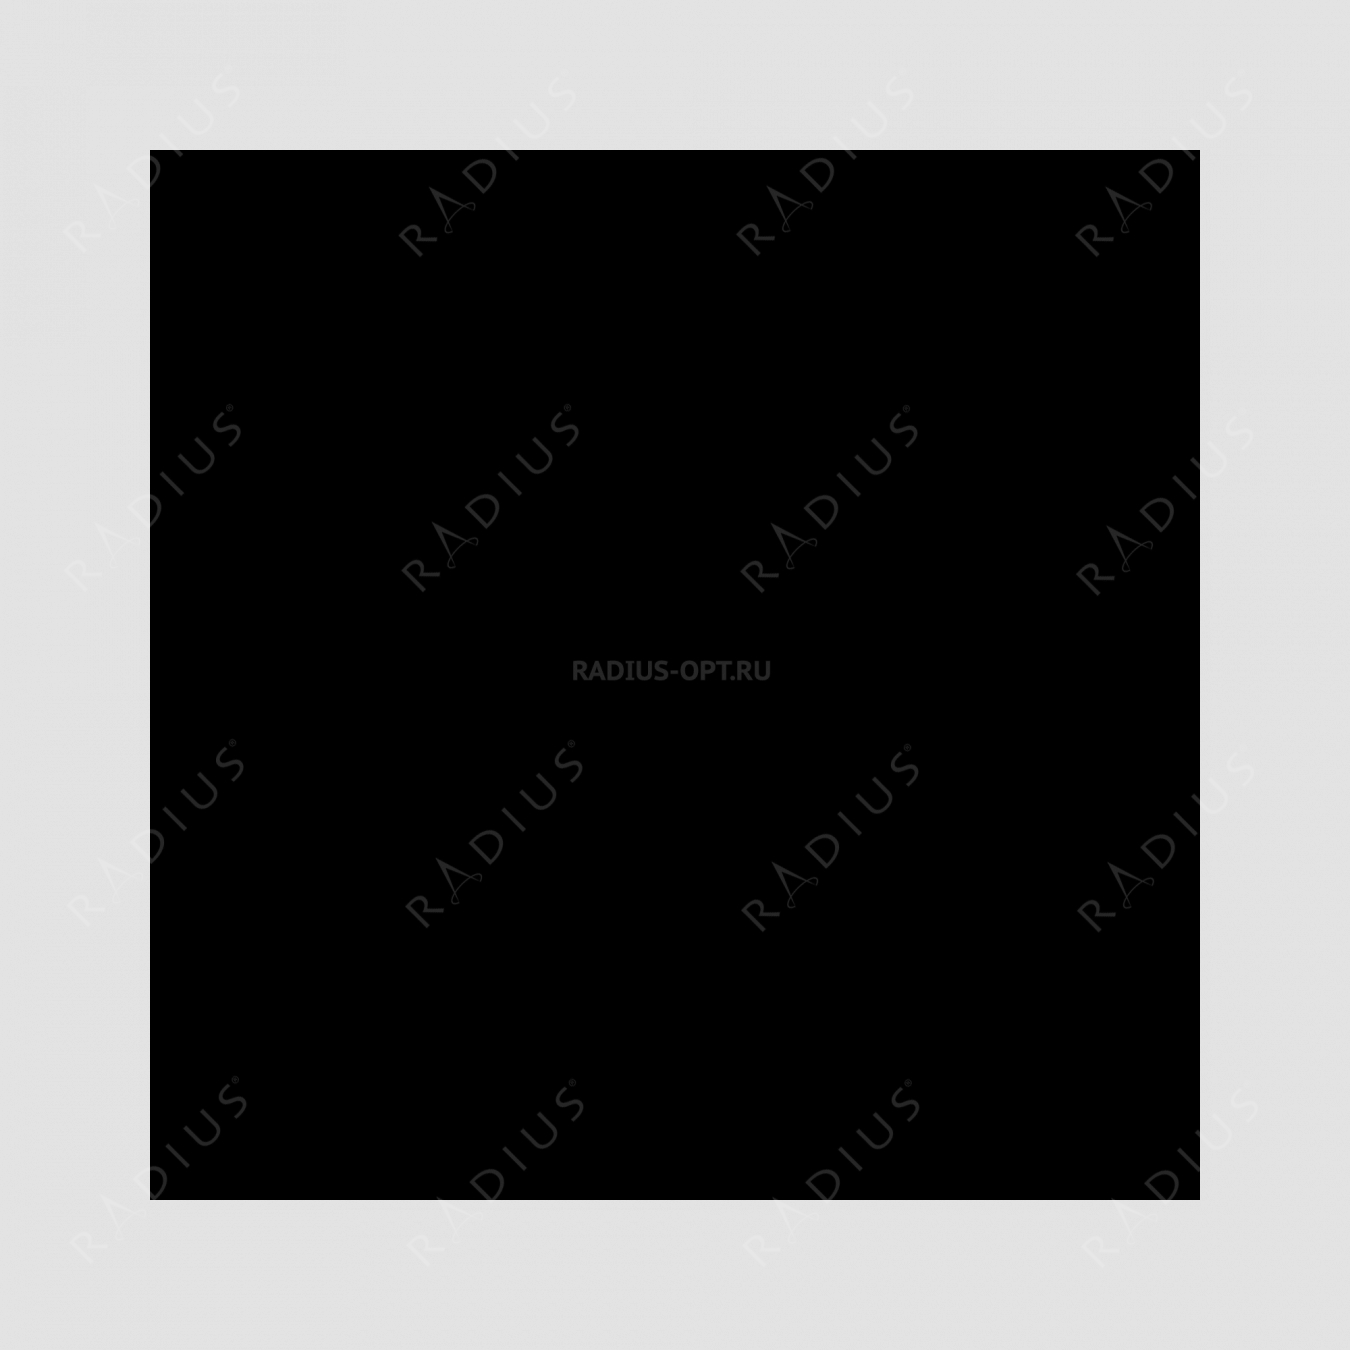 Кастрюля с крышкой, диаметр 22 см, объем 3,1 л, чугун с эмалированным покрытием, цвет черный, серия Noir mat, INVICTA, Франция